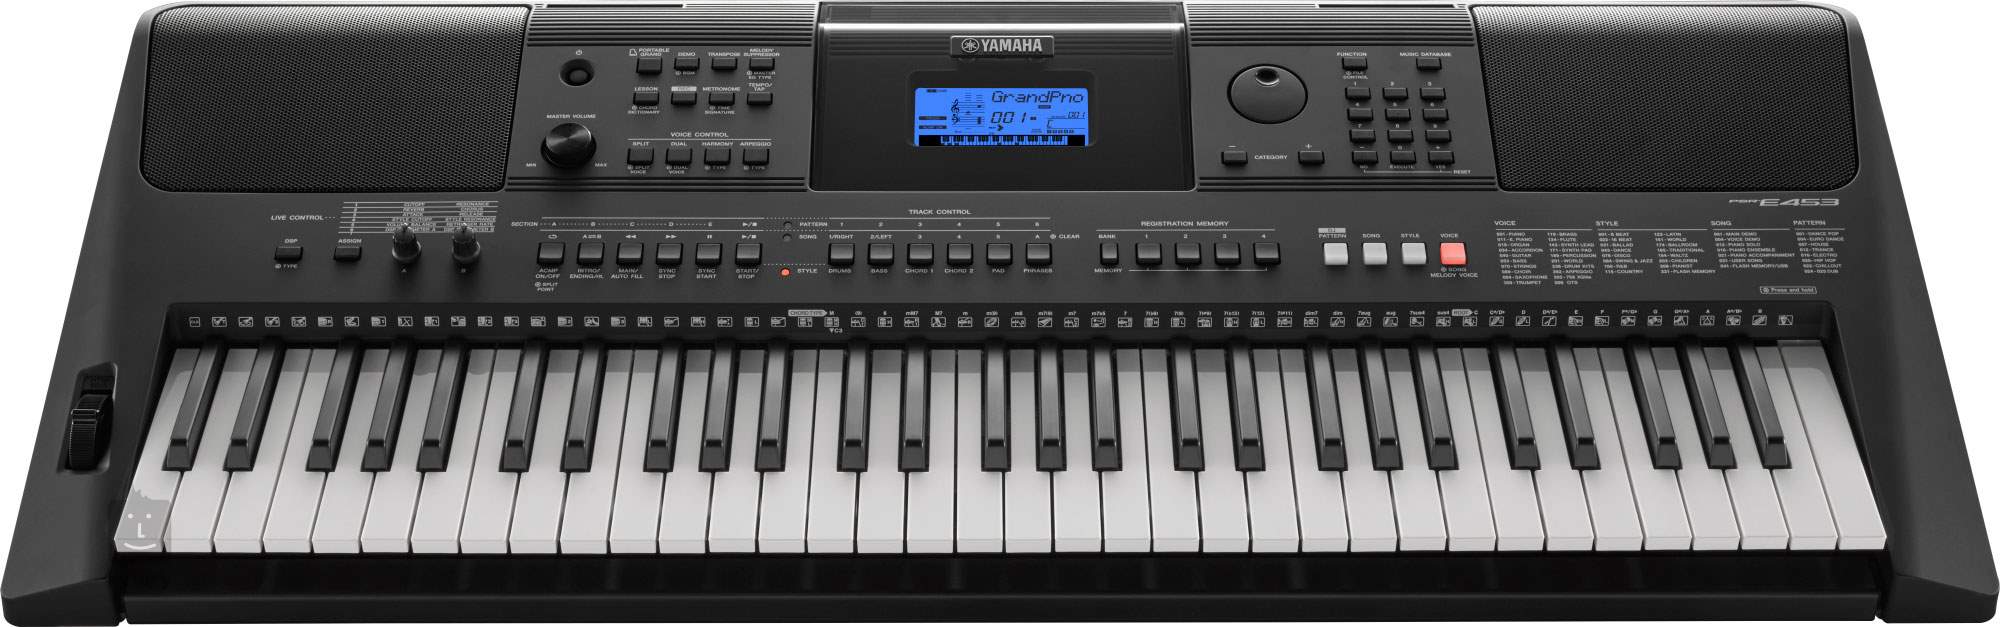 Tutorial del teclado Yamaha PSR-E453 - Video 1 - Selección de